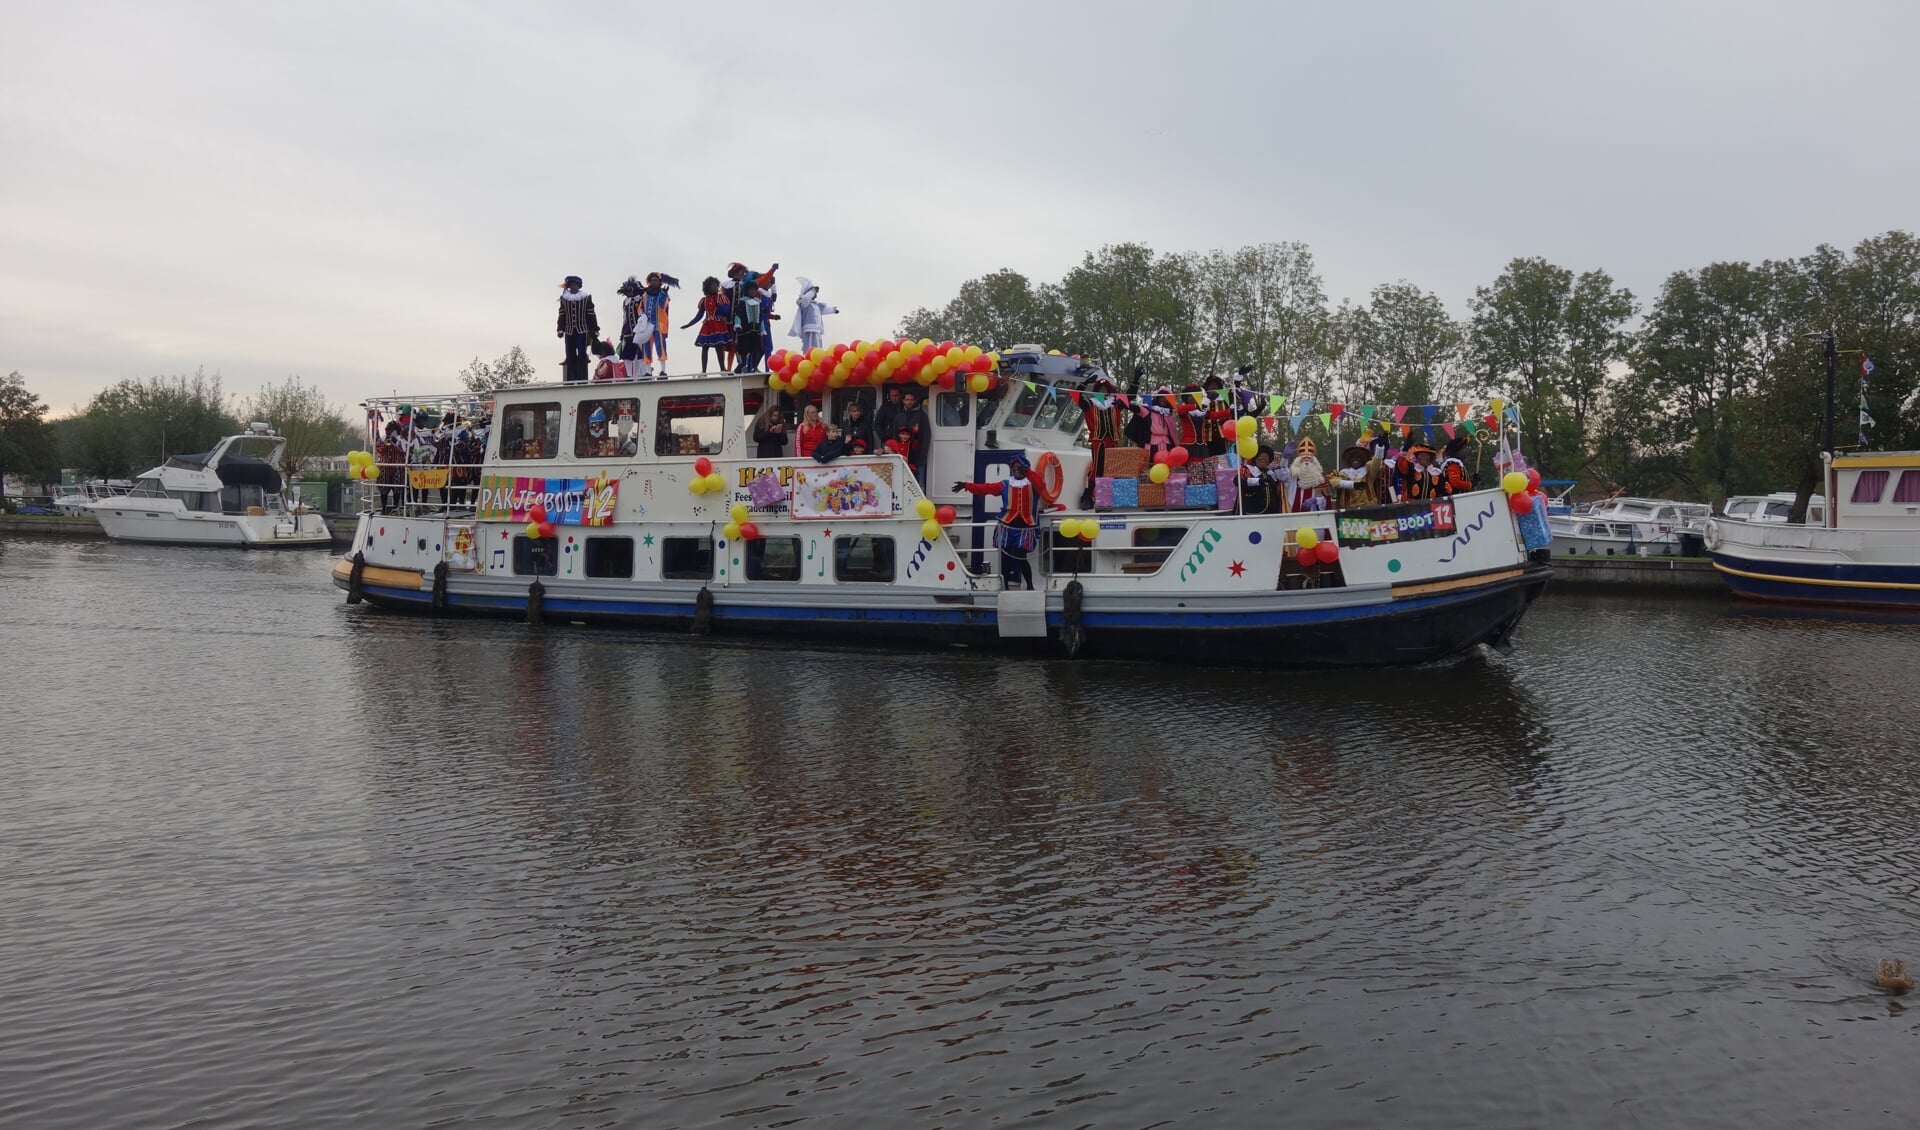 Pakjesboot 12 kwam zaterdag aan in Lisse met een kostbare lading: Sint, pieten en cadeaus! 